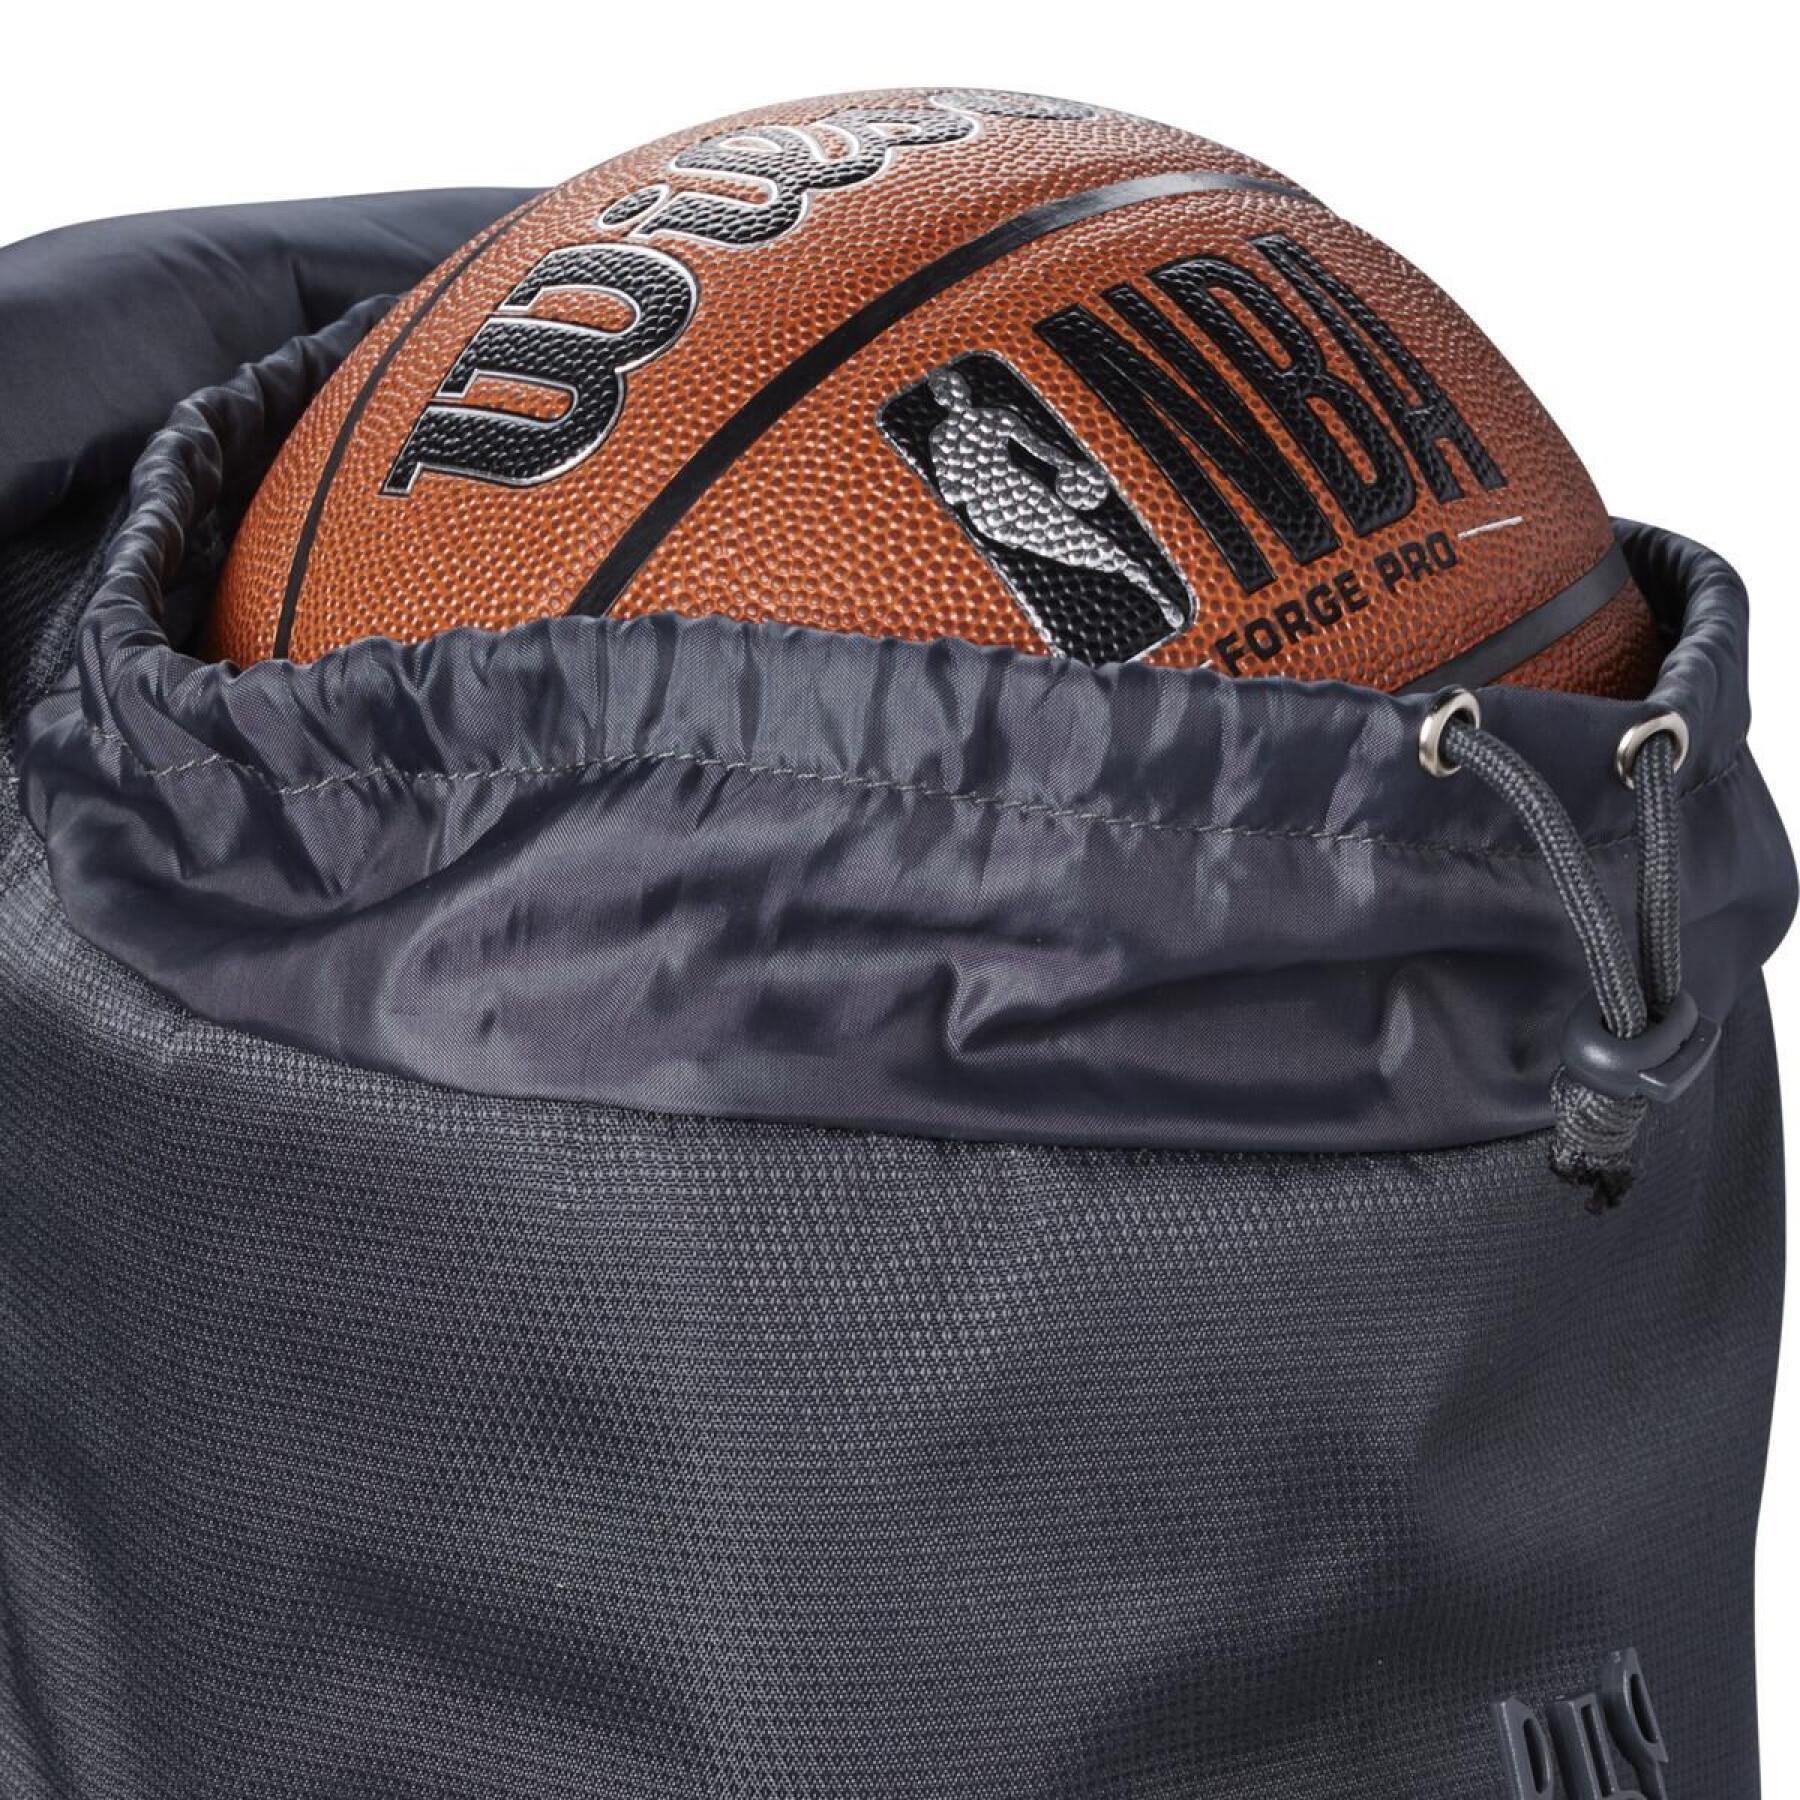 Backpack NBA Forge